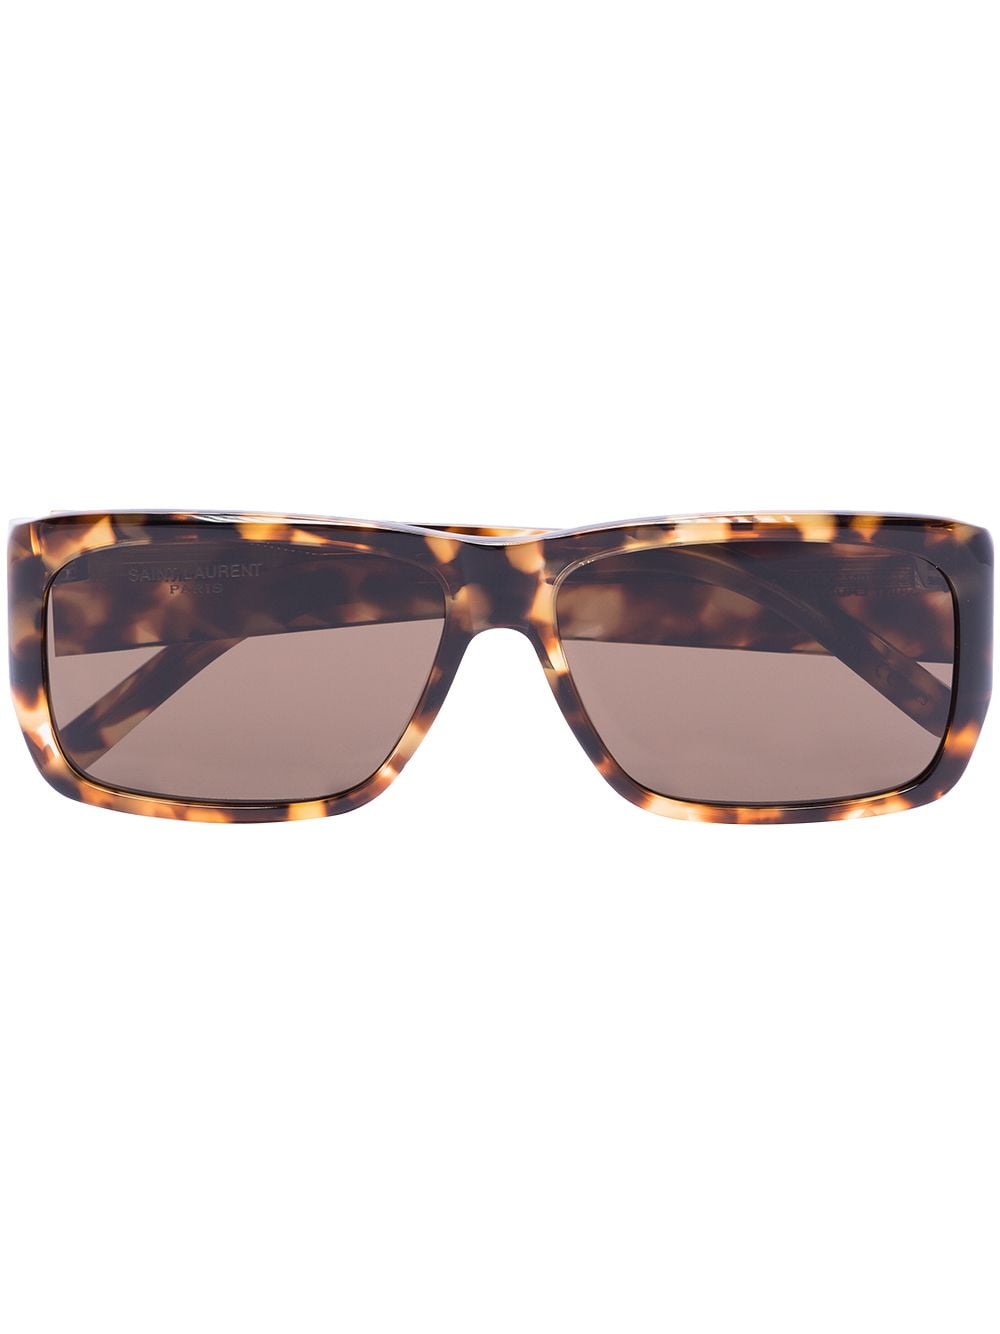 фото Saint laurent eyewear солнцезащитные очки lenny в прямоугольной оправе